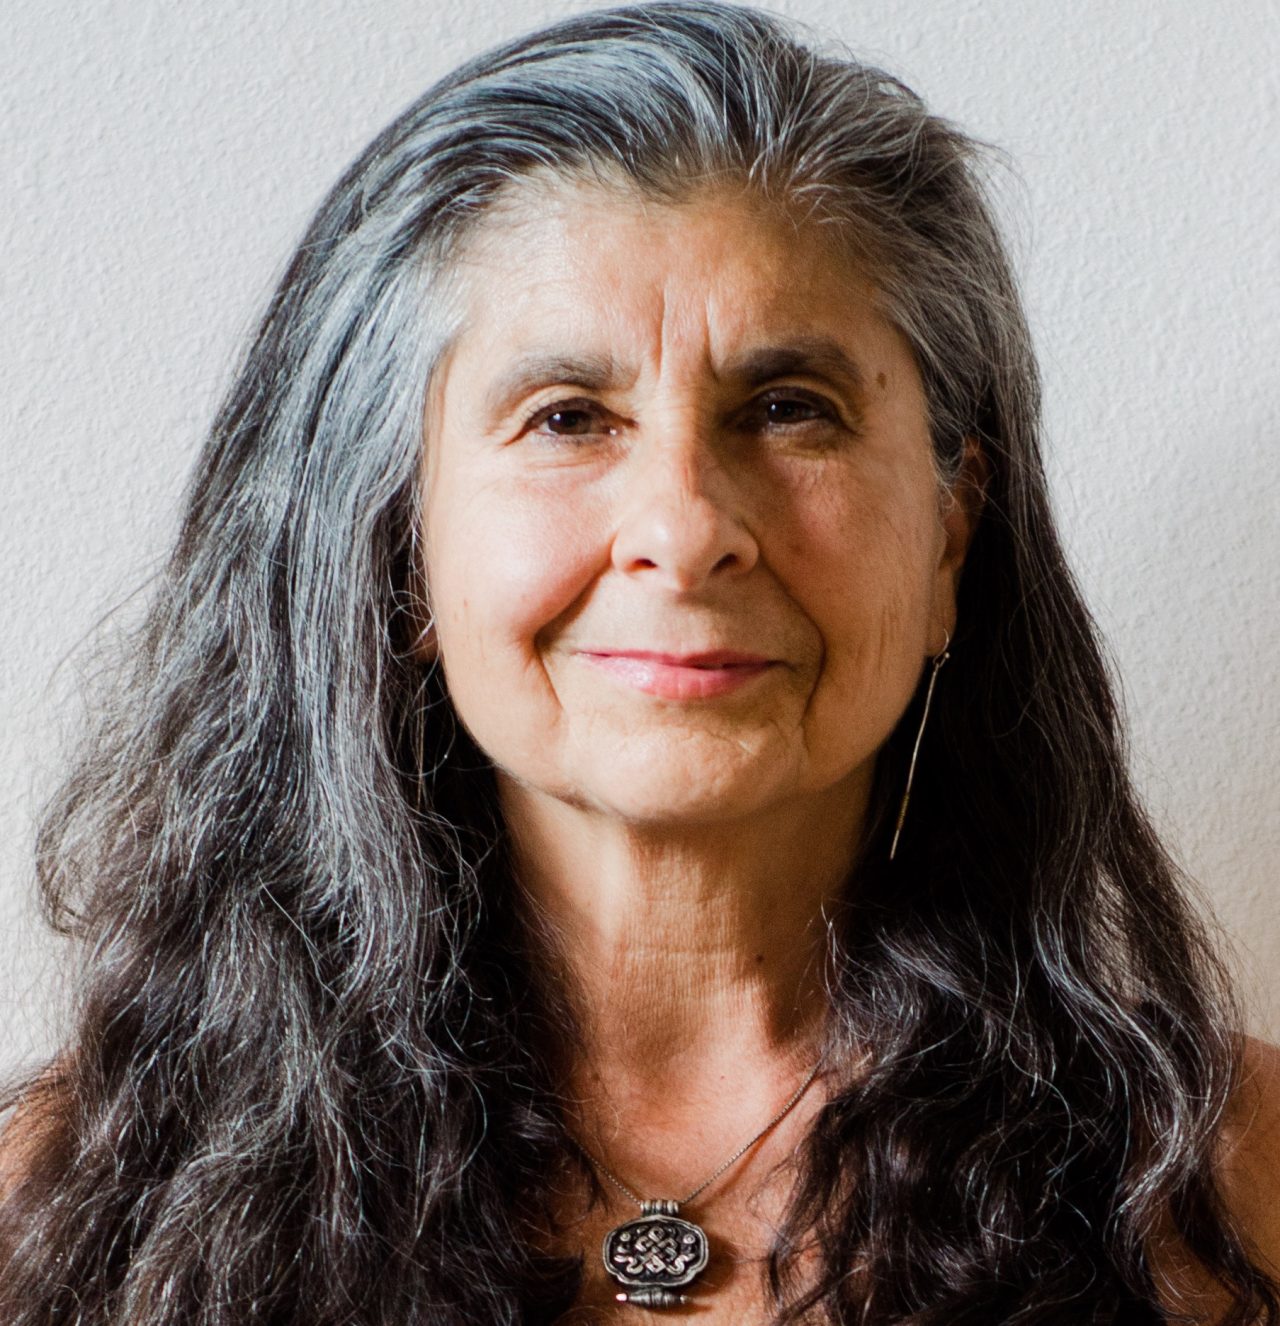 Op de afbeelding is de auteur van 'Embodied spiritualiteit' te zien, Susan Aposhyan. Ze is een vrouw van middelbare leeftijd en heeft lang haar tot over haar schouders dat zwart/grijs is.